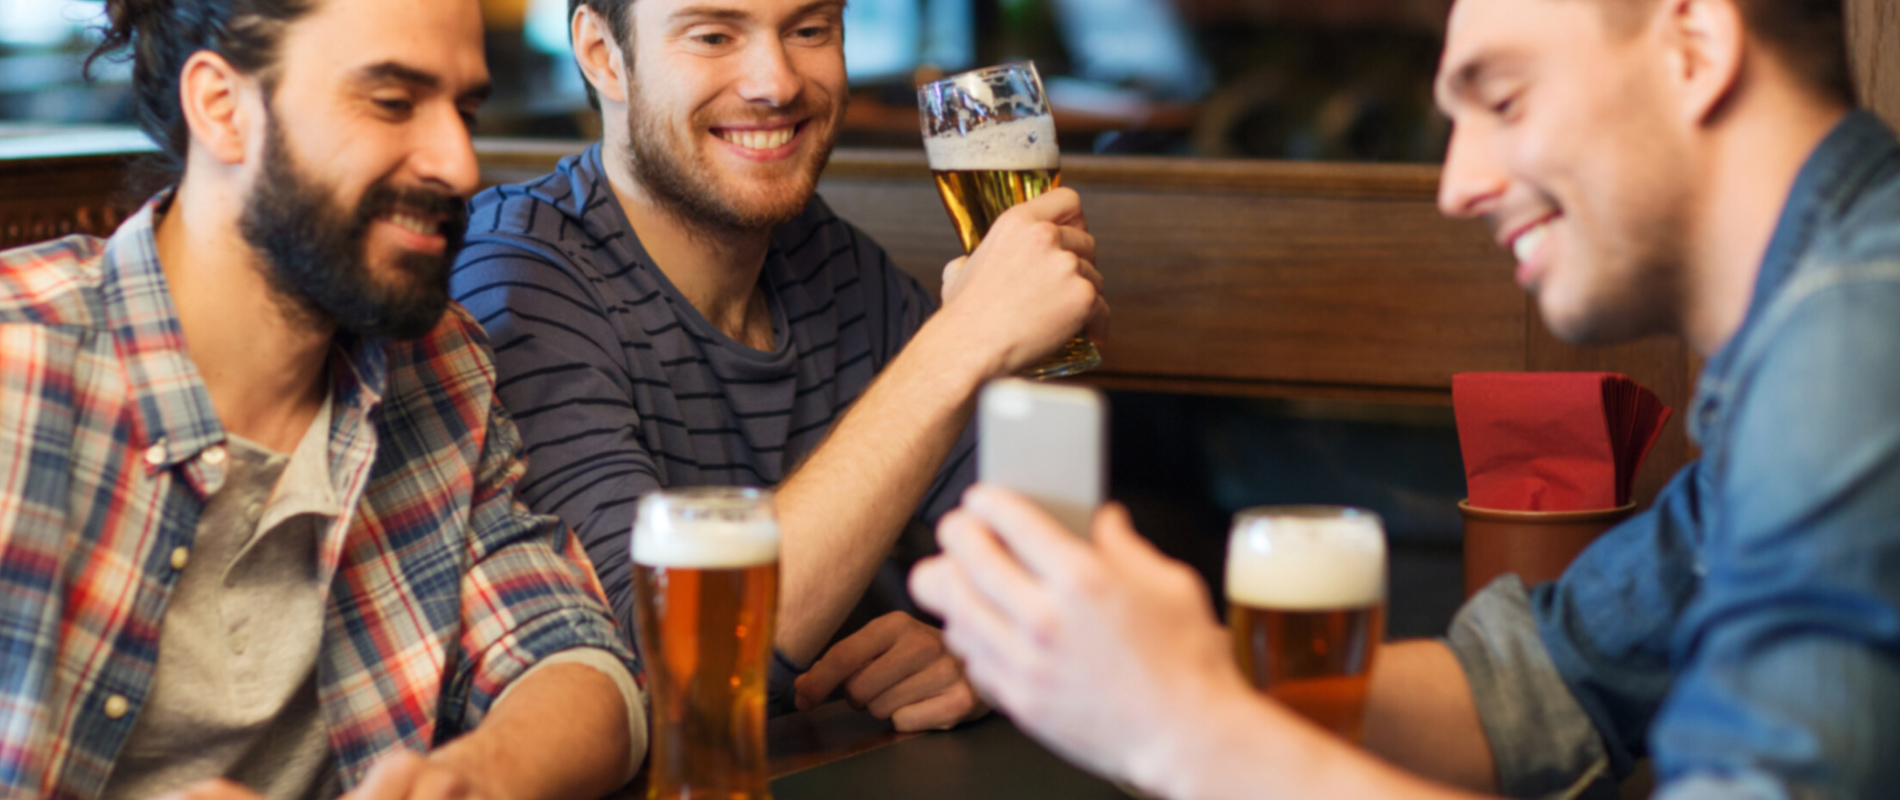 Männer trinken Bier und schauen sich Bierendtecker.com an